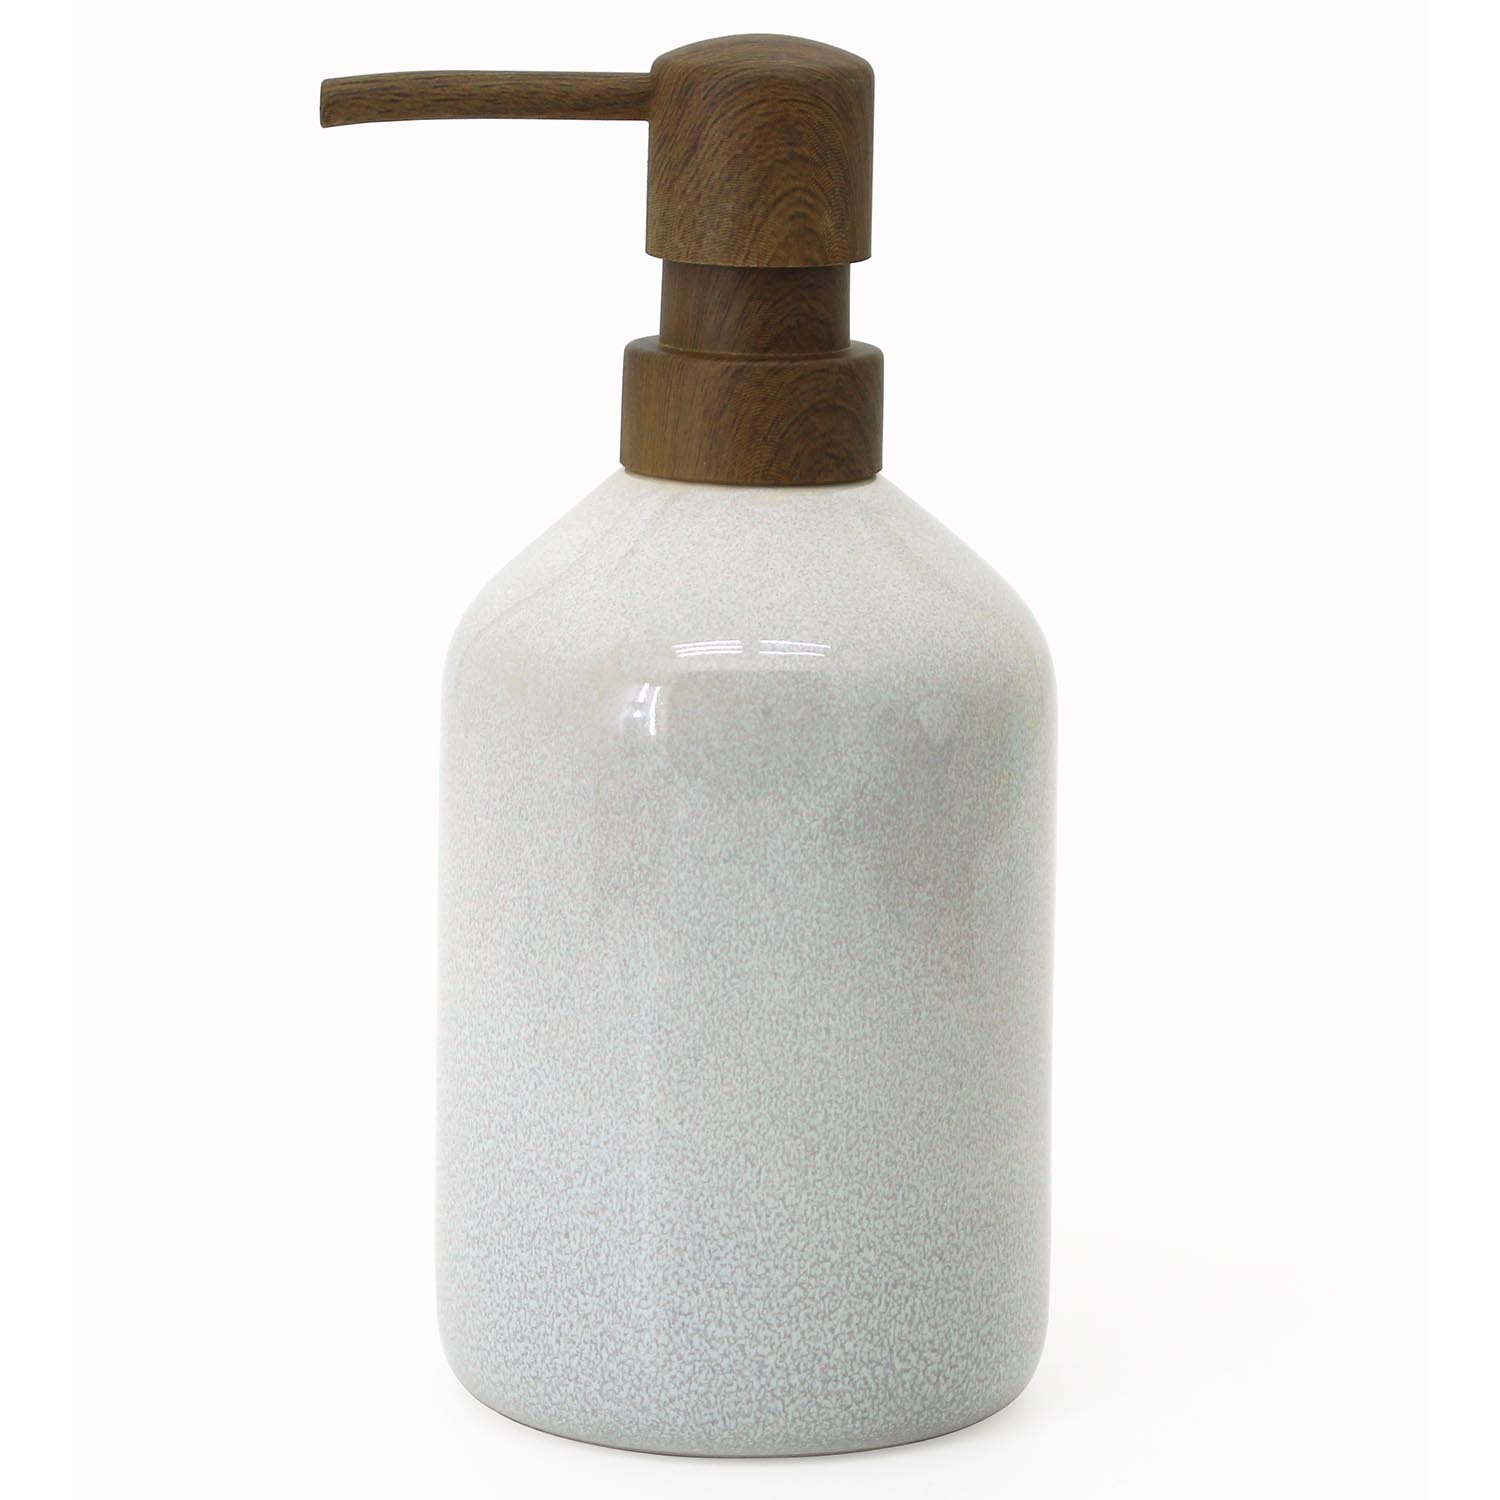 Stone Glaze Soap Dispenser - White Image